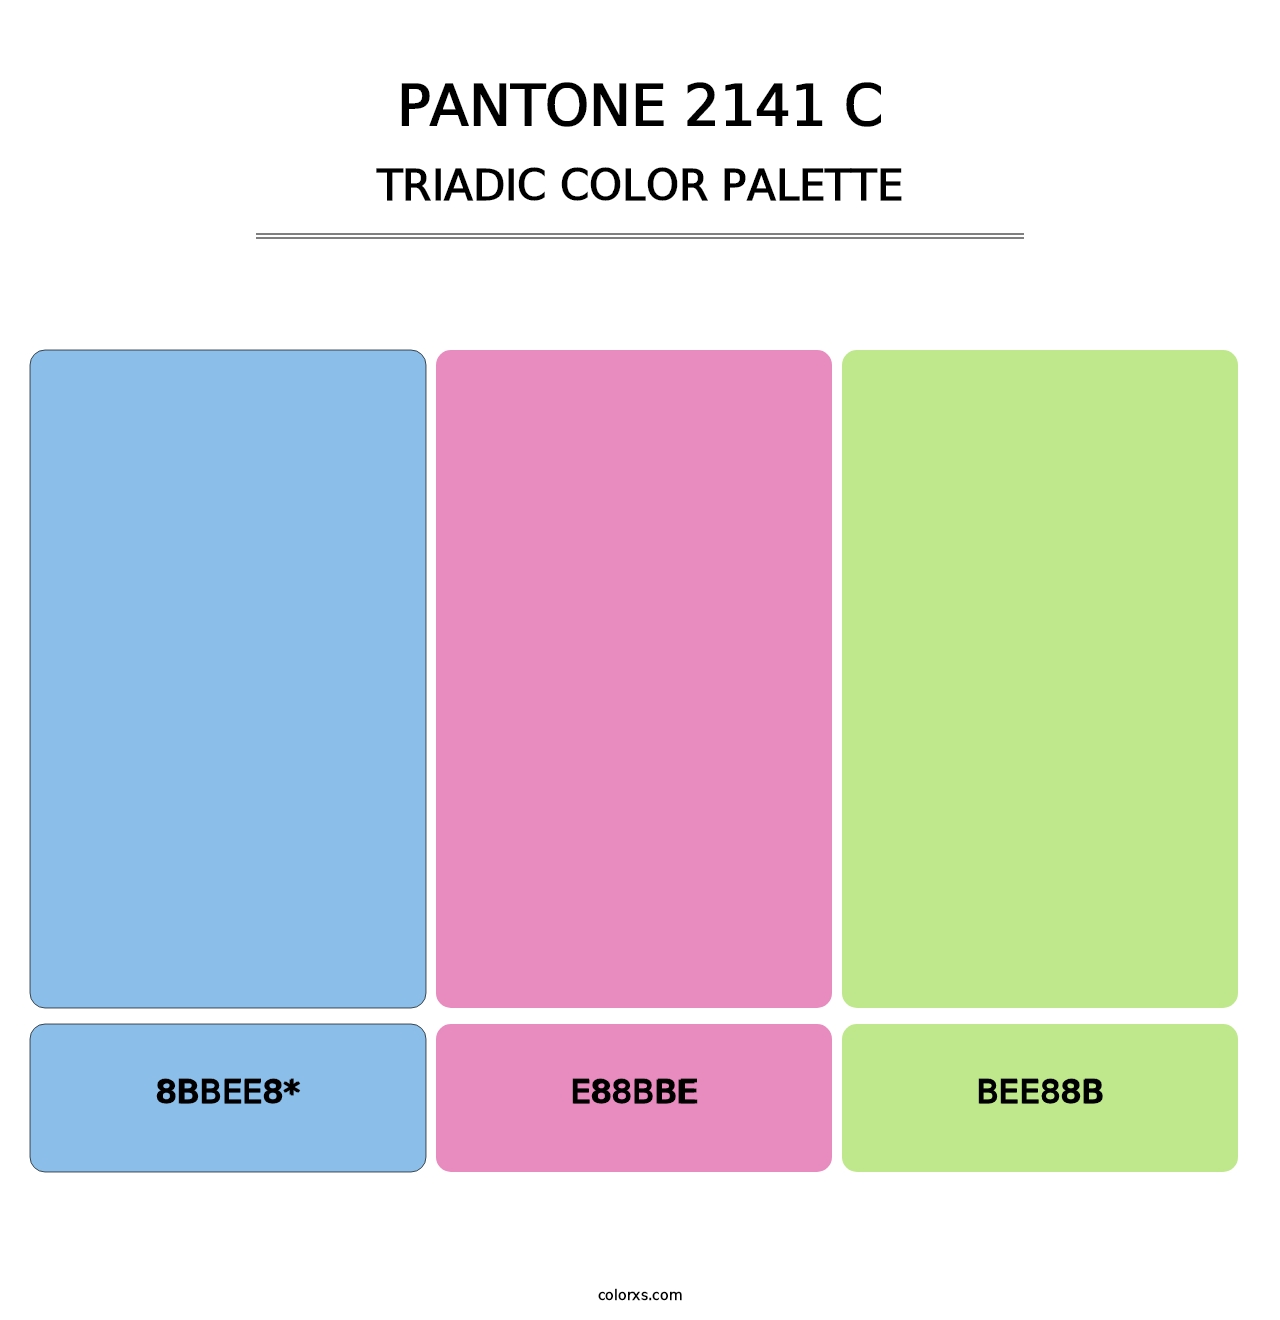 PANTONE 2141 C - Triadic Color Palette